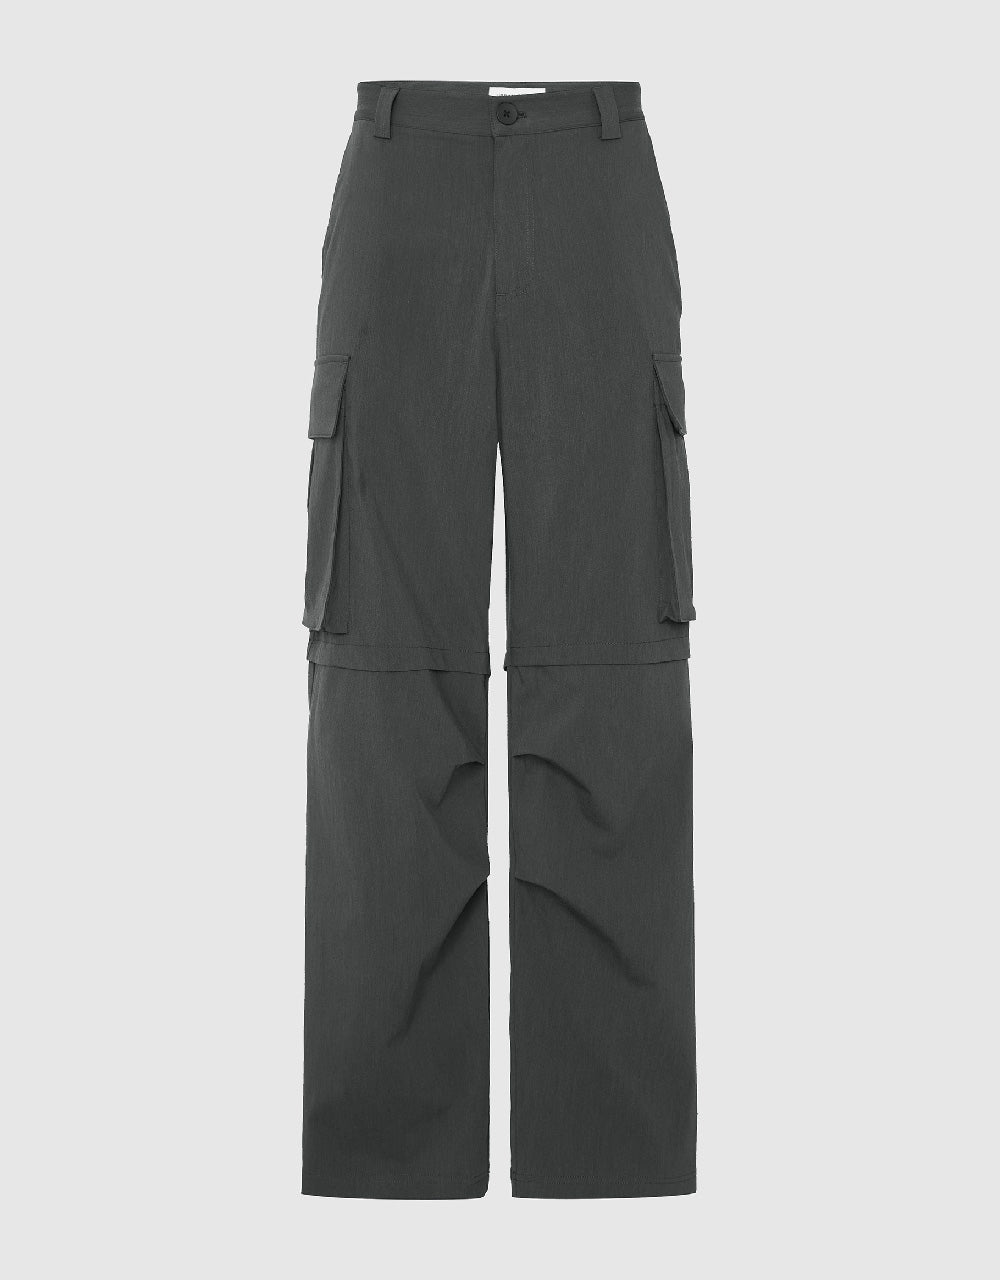 Multi-Pocket Straight Pants